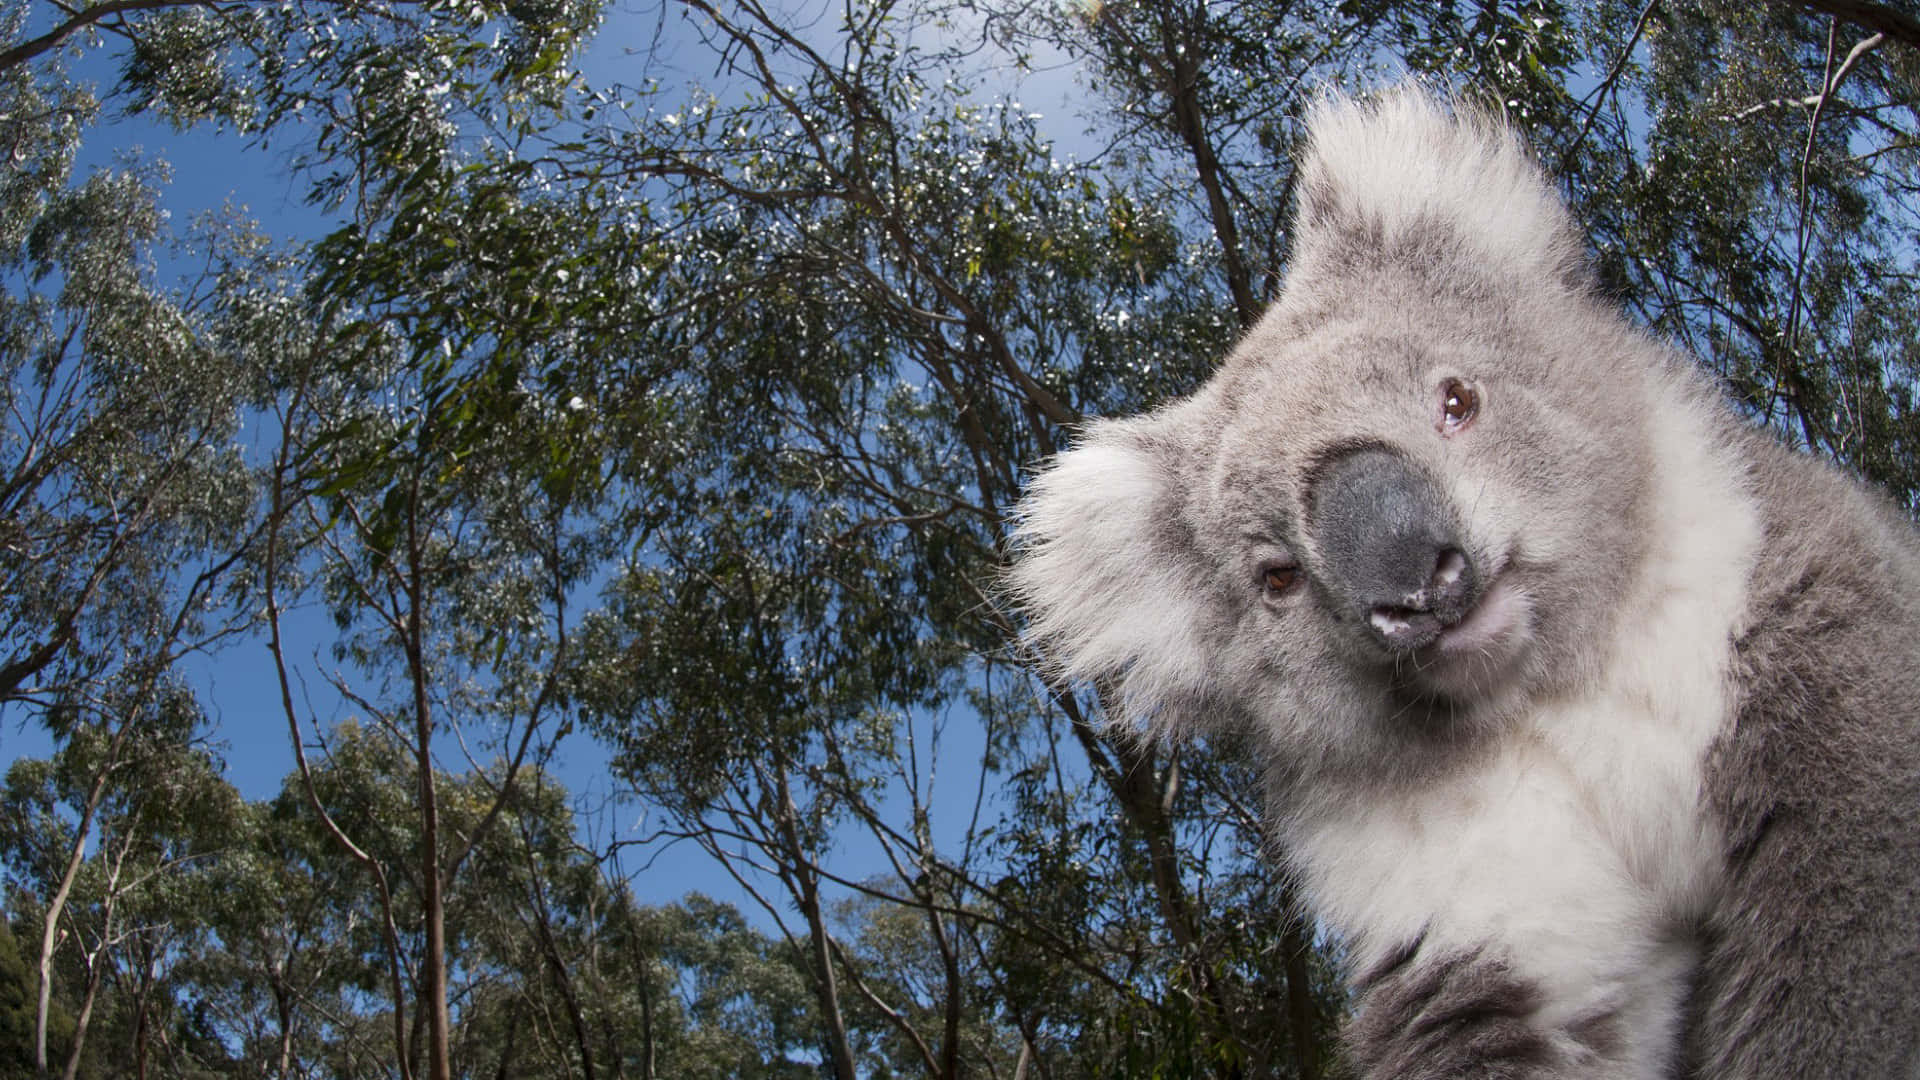 Adorable Koala Hugs a Tree